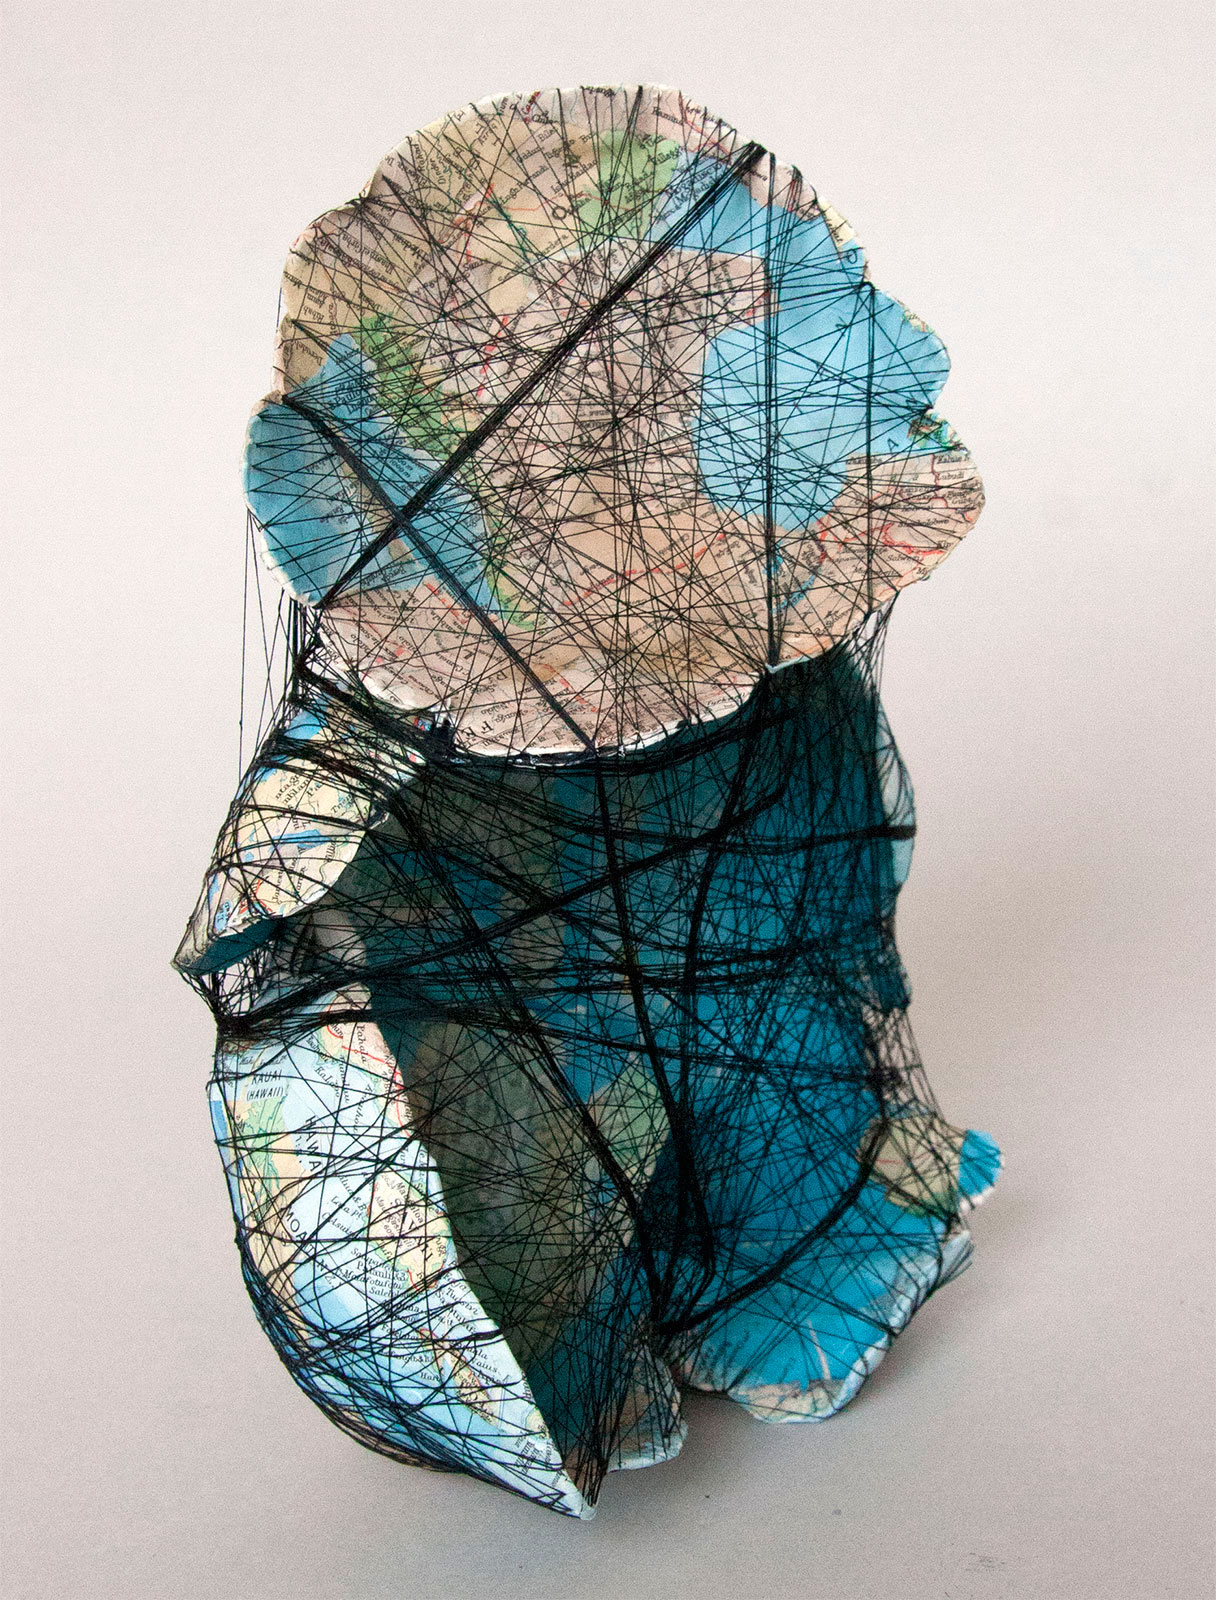 Hillevi Berglund, "Baby", 2012. Paper, Sewing thread, 22 x 15 x 12 cm